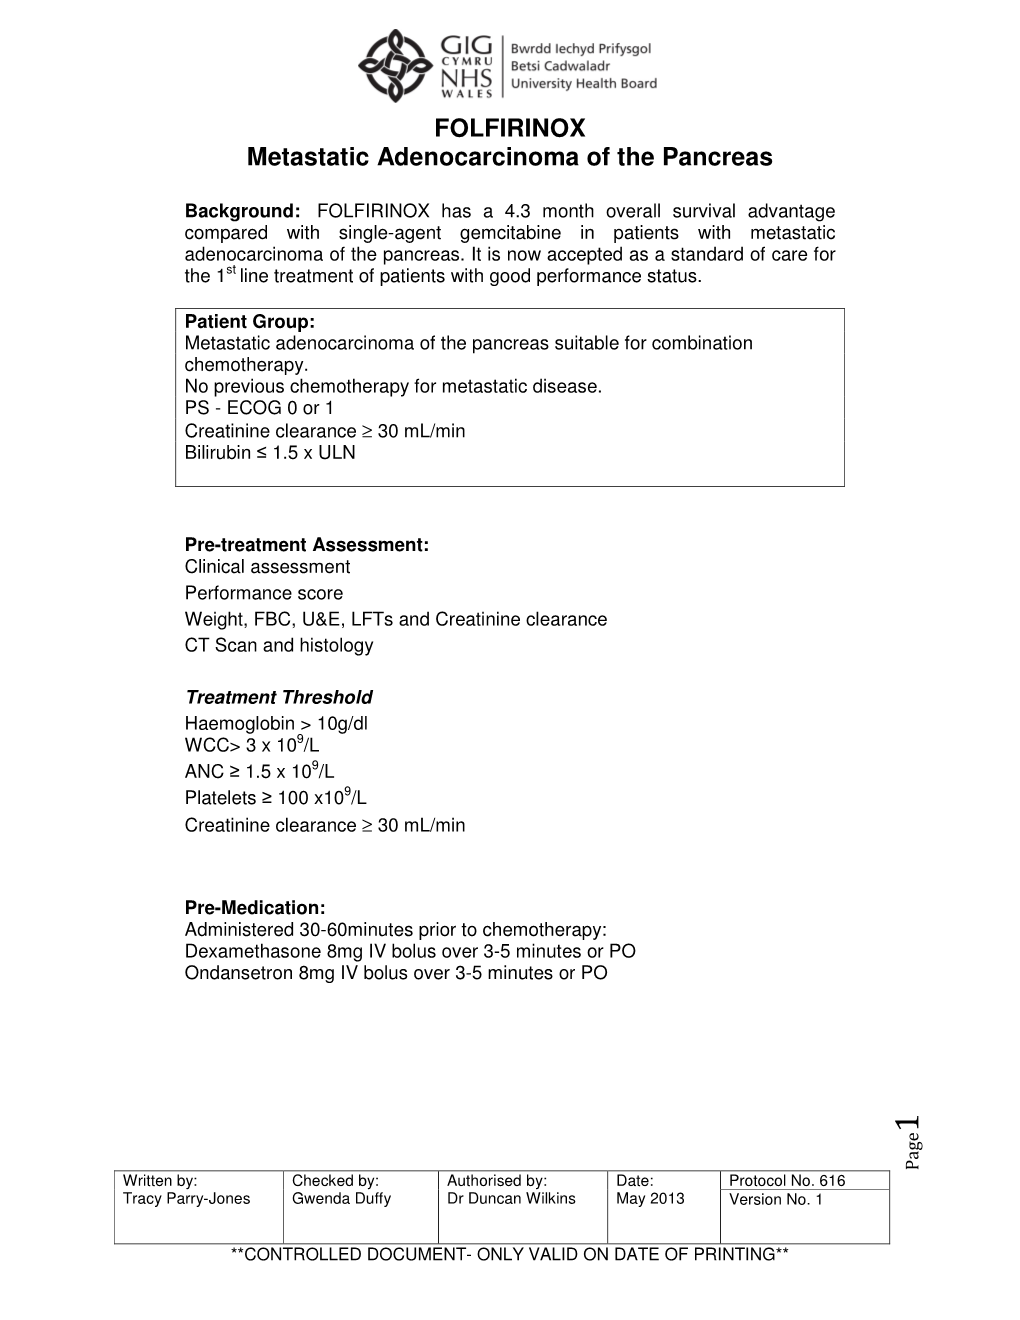 FOLFIRINOX Metastatic Adenocarcinoma of the Pancreas